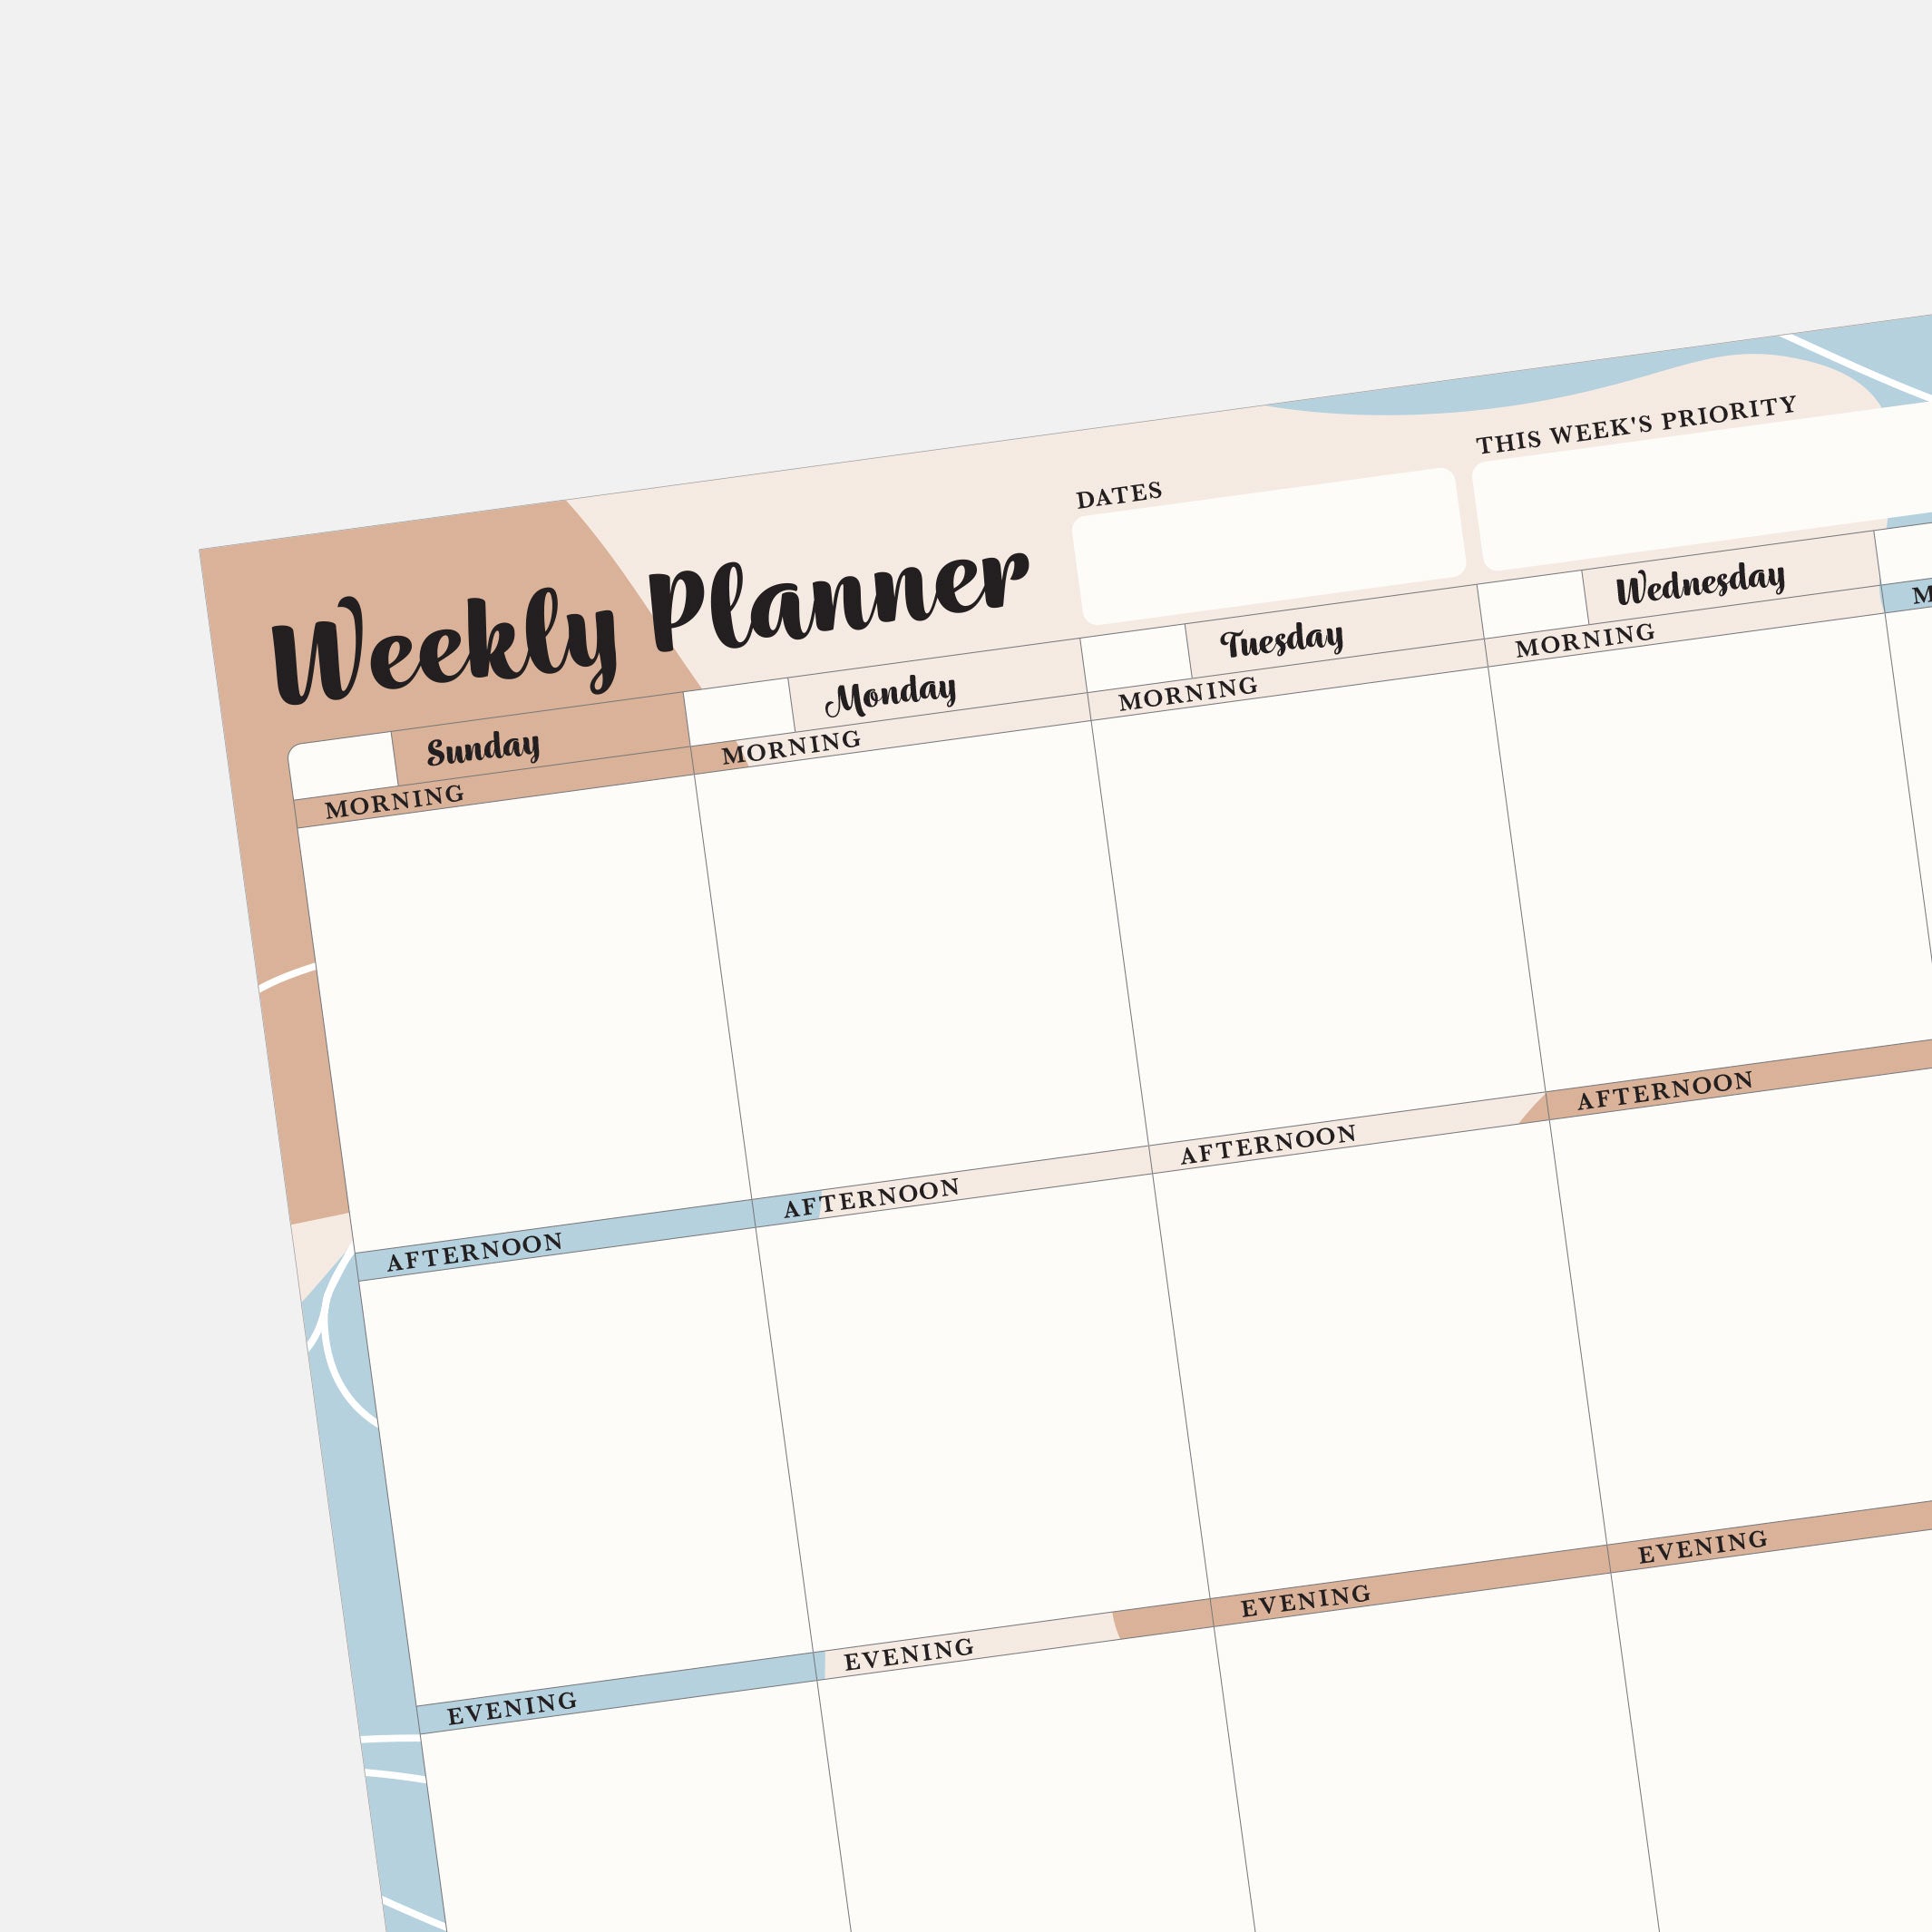 Weekly Desk Planner